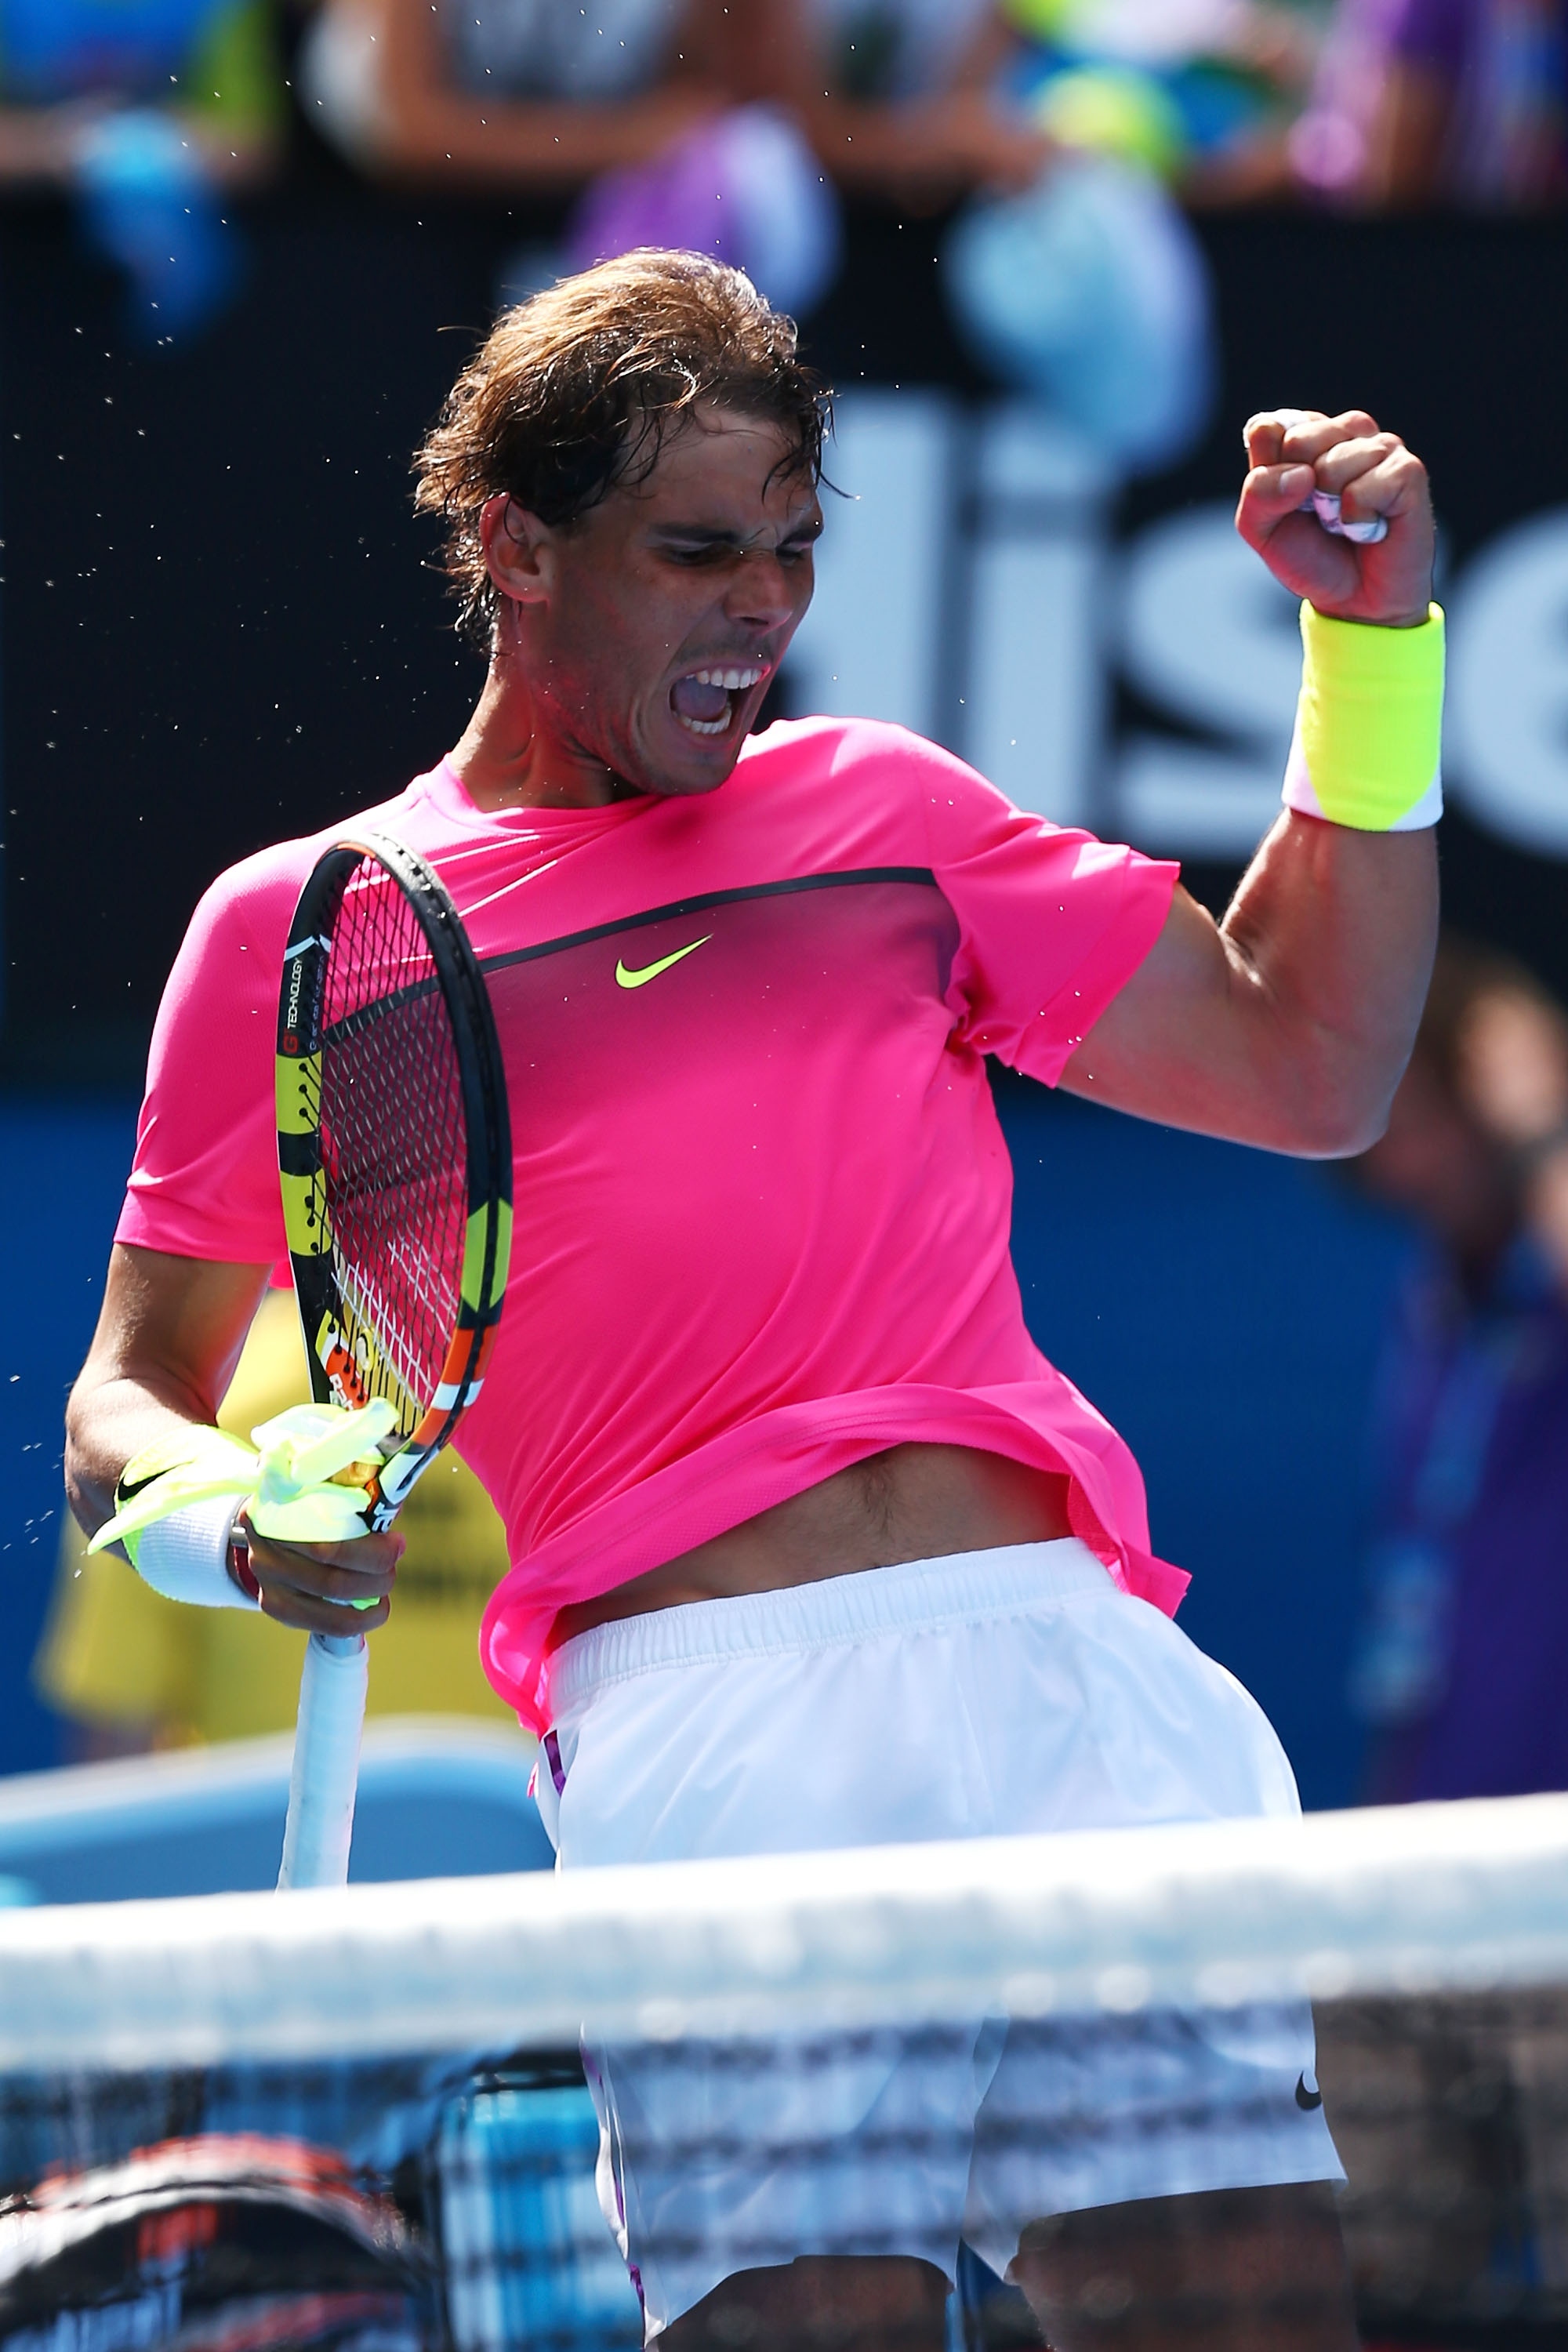 Rafael Nadal vs Mikhail Youzhny Open de Australia 2015 Pict. 19